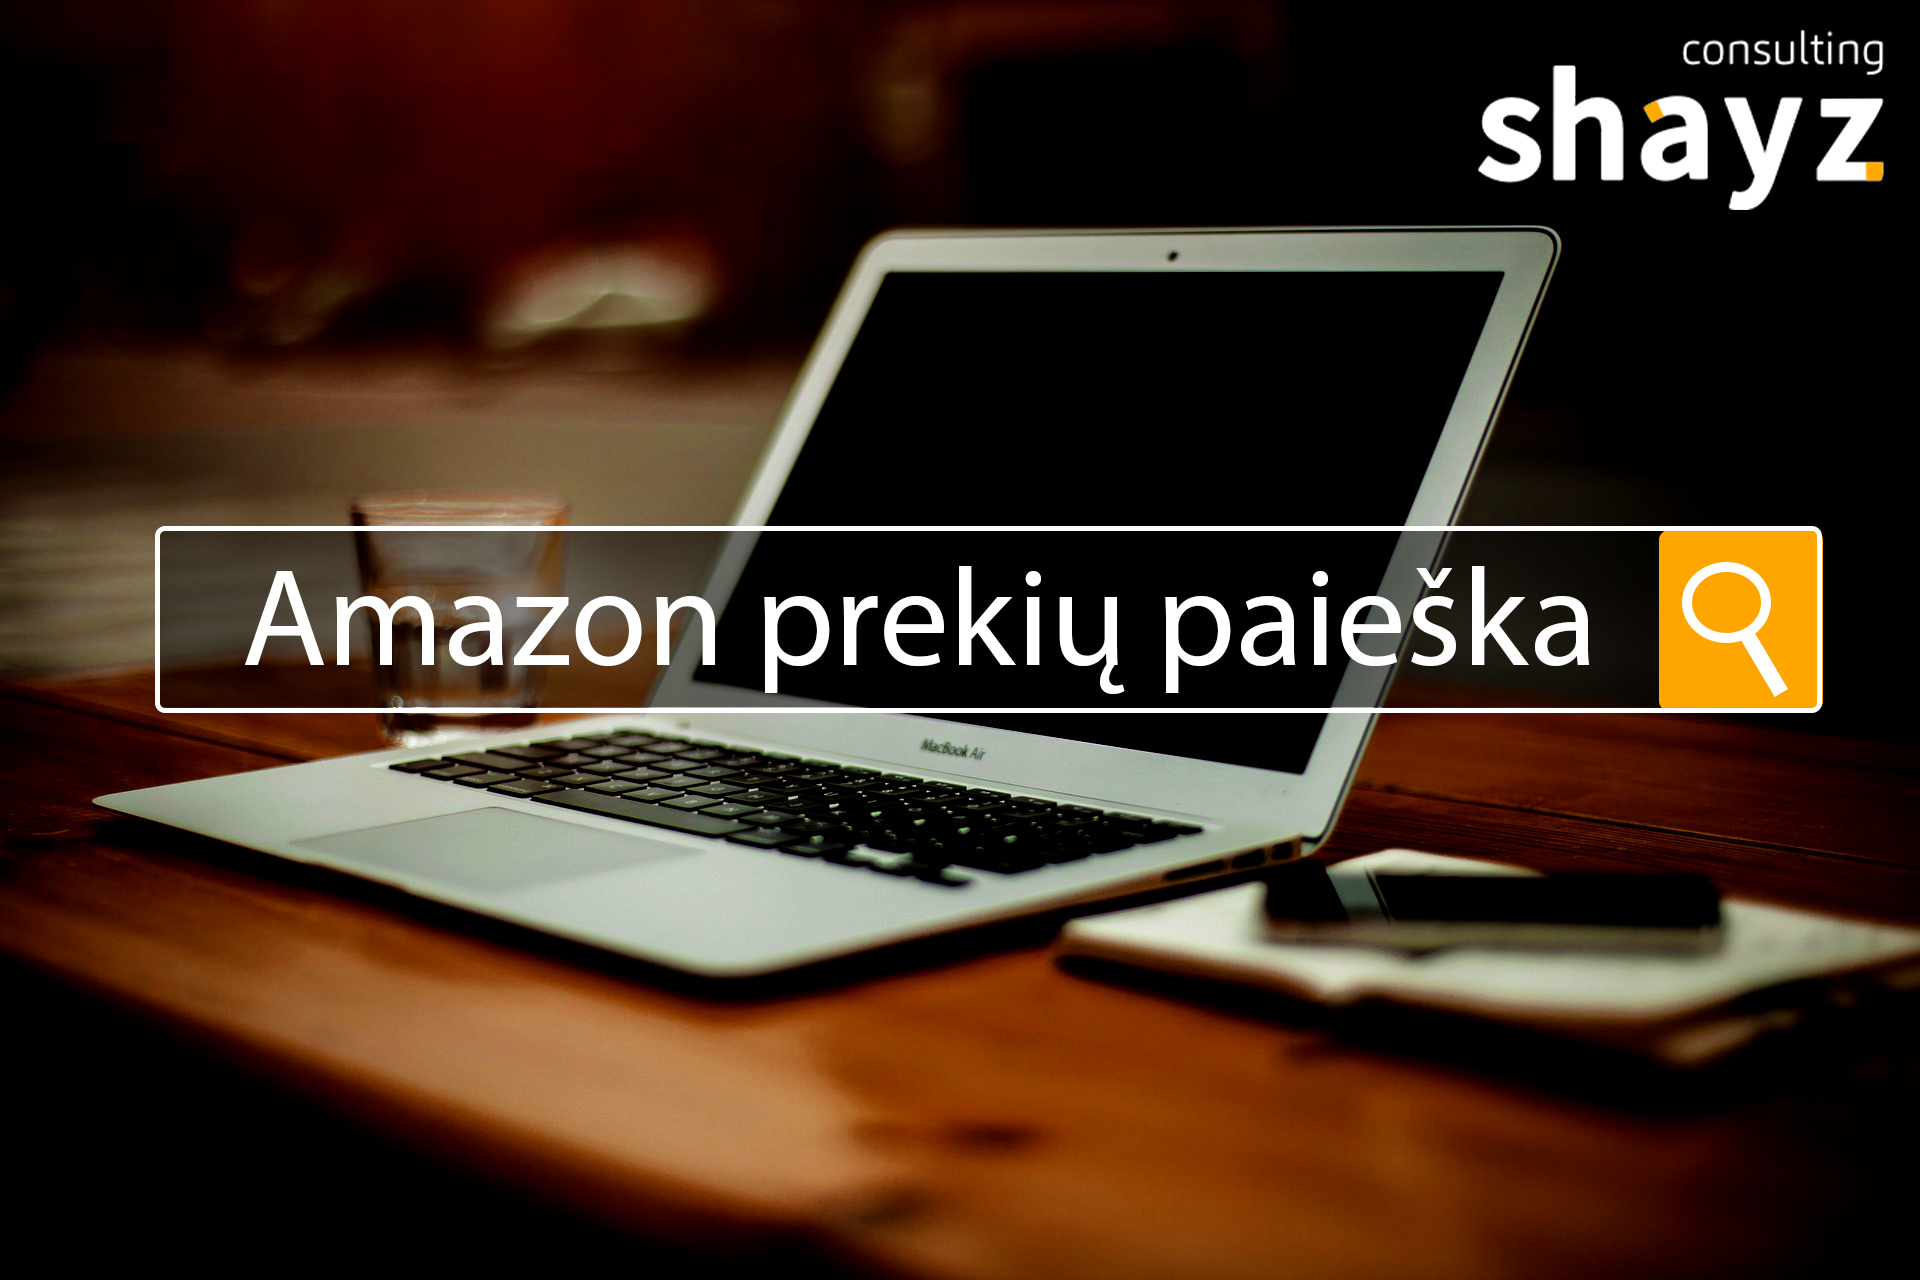 “Amazon” prekių paieška